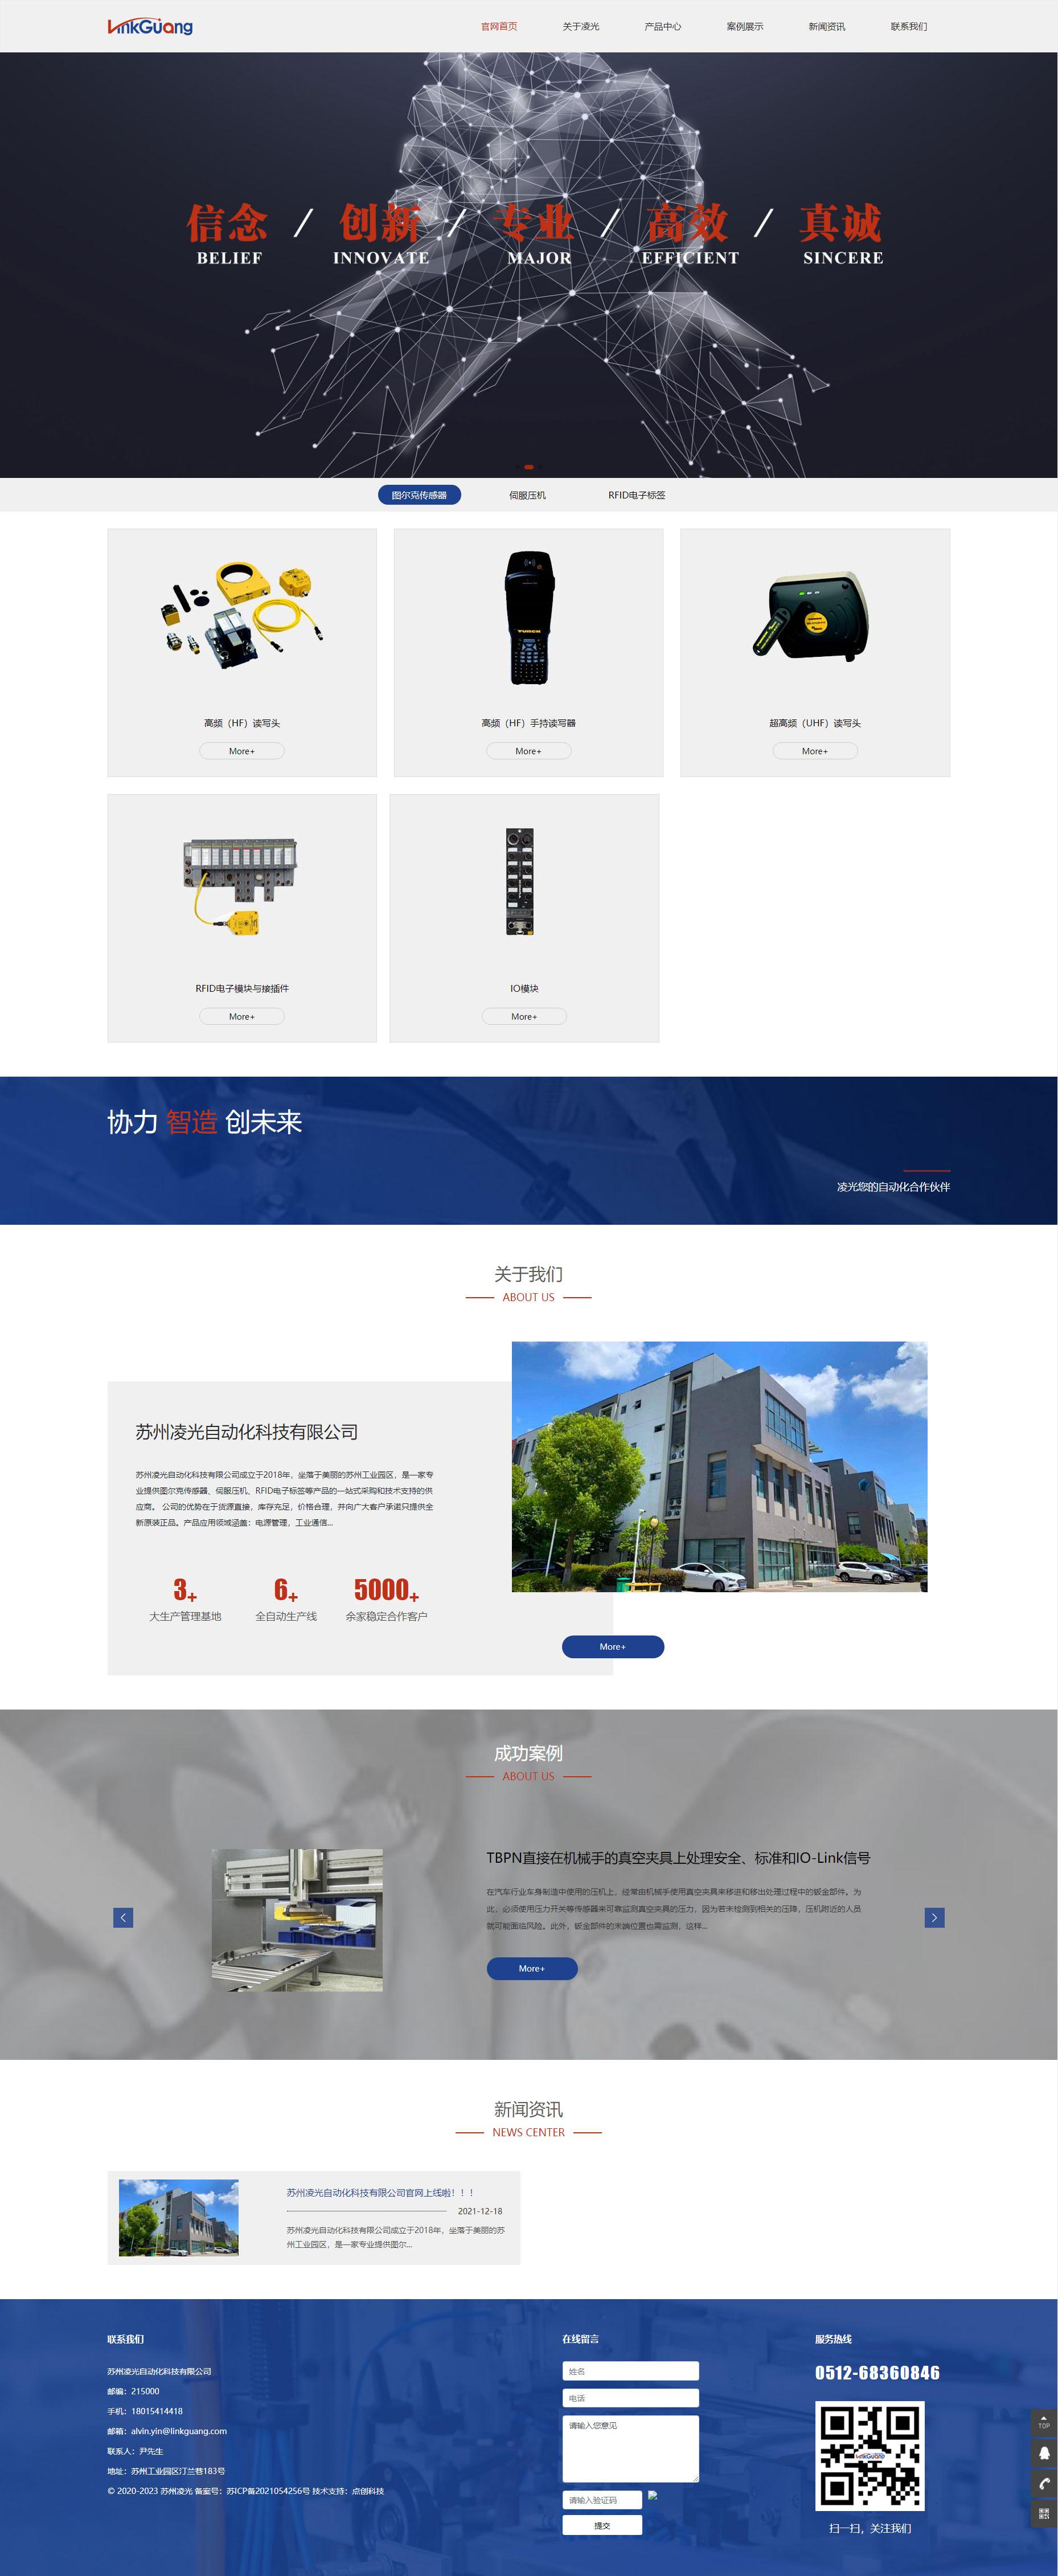 苏州网站建设公司为苏州凌光自动化科技有限公司设计的官网首页